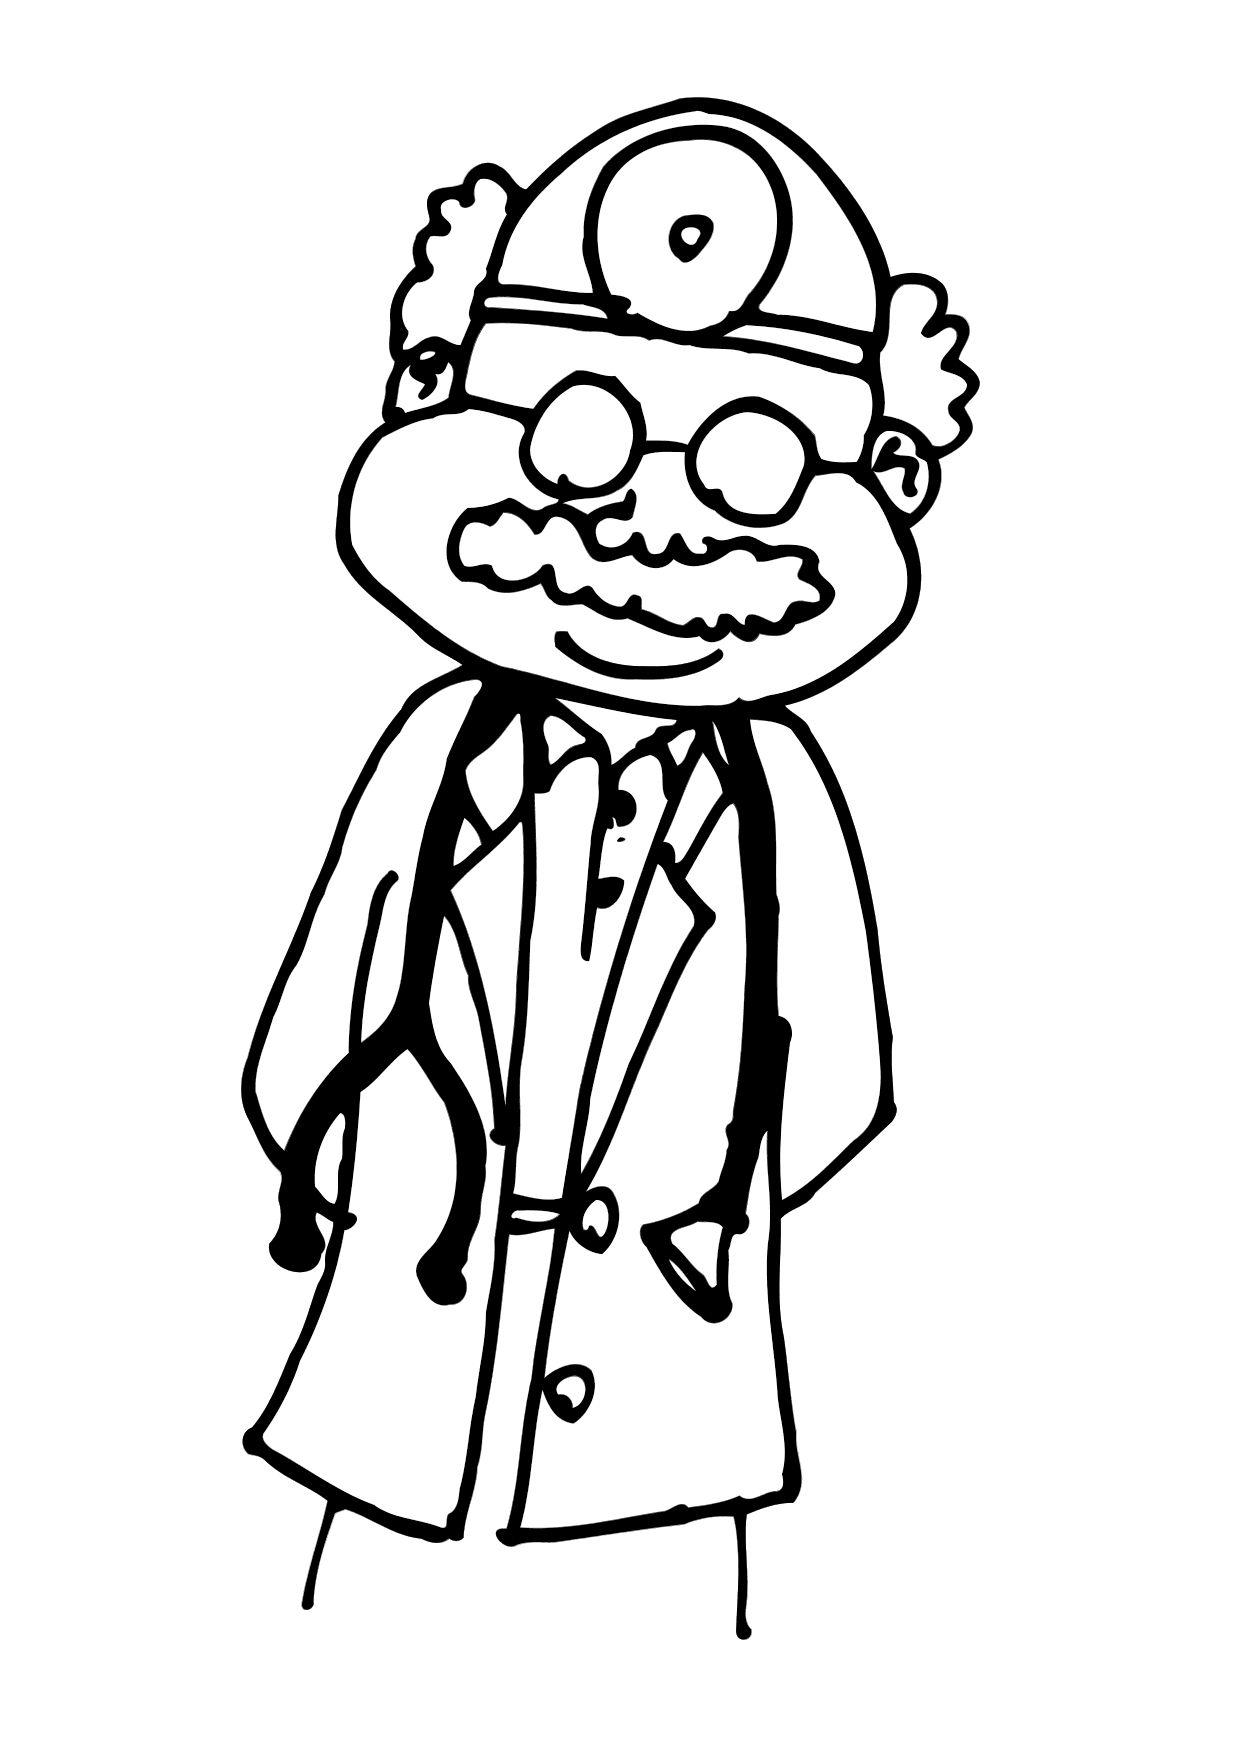 desenho de doutor fazendo consulta medica em paciente [download